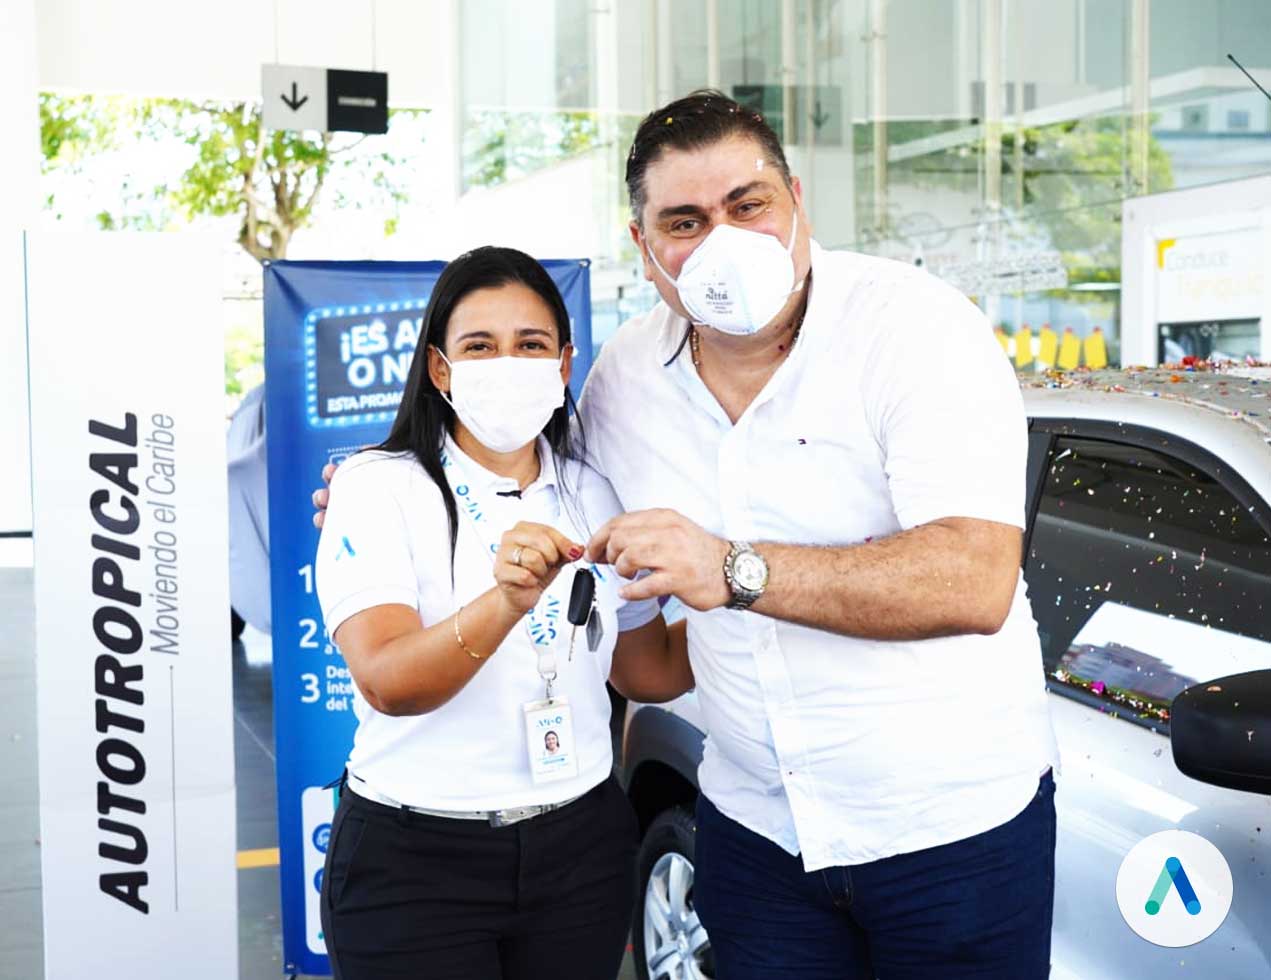 Air-e premió con un carro cero kilómetros a usuario puntual en Barranquilla